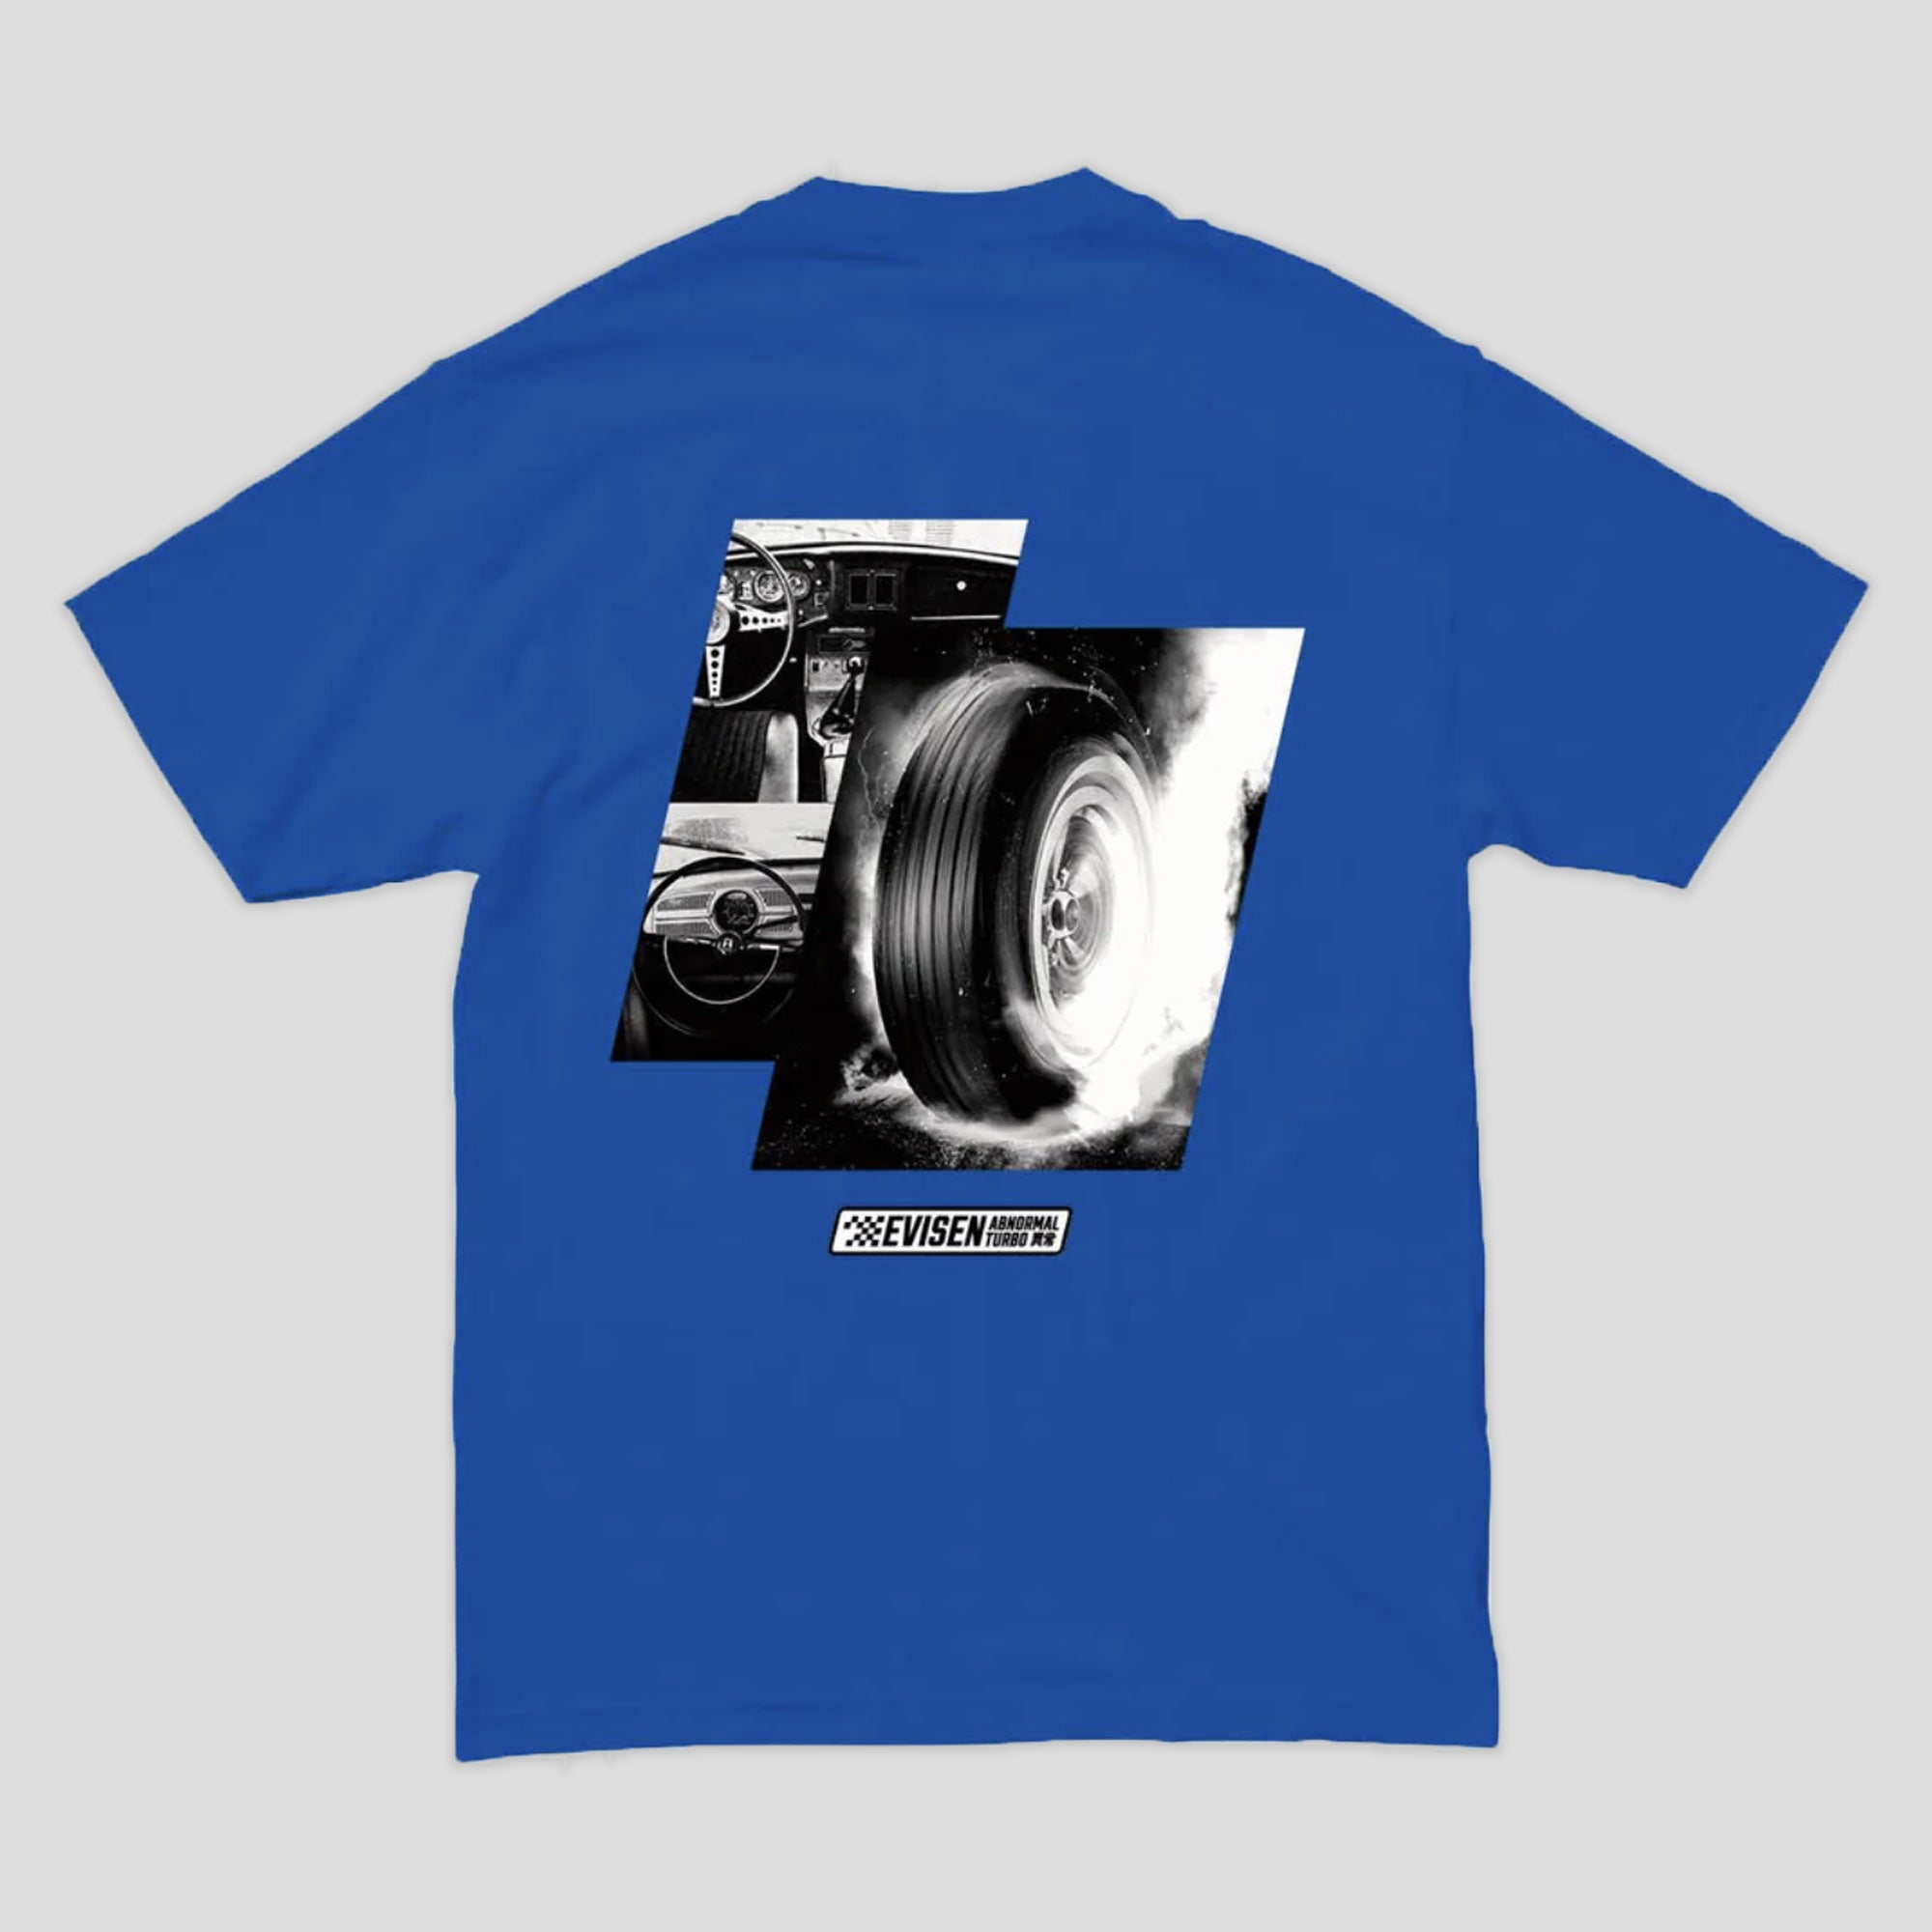 Evisen Abnormal Turbo T-Shirt - Blue